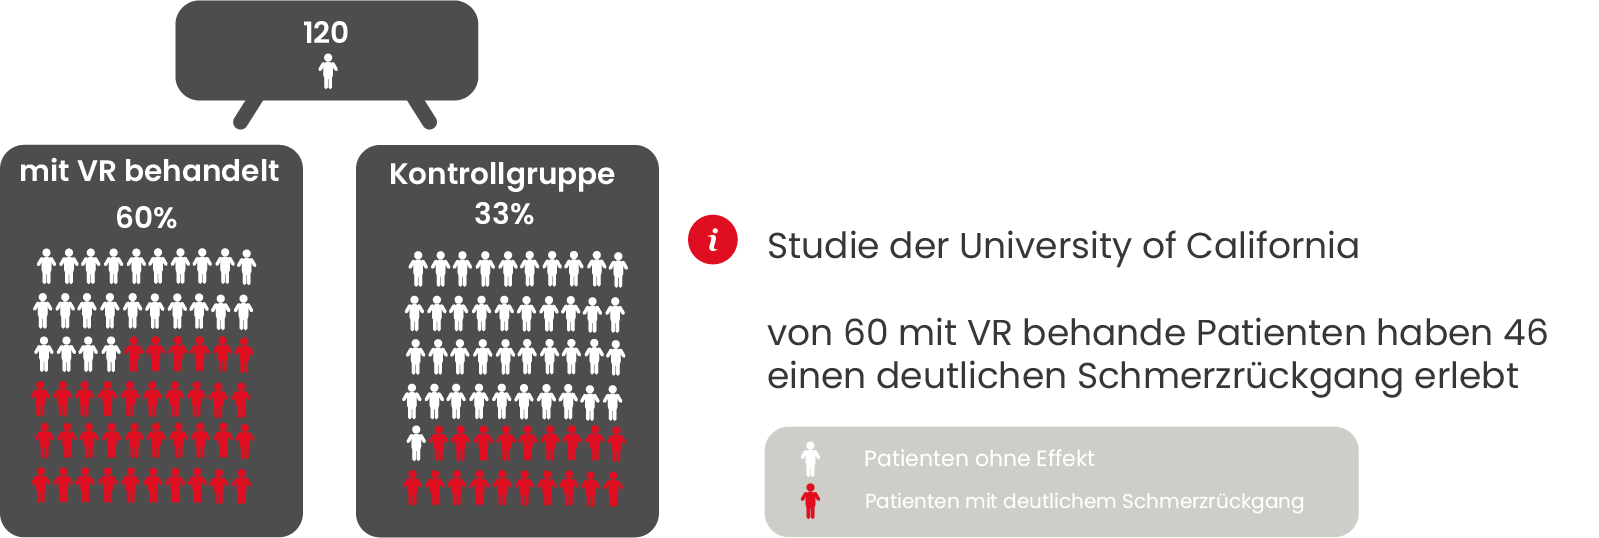 Infografik über Studie der University of California zu VR bei Demenz